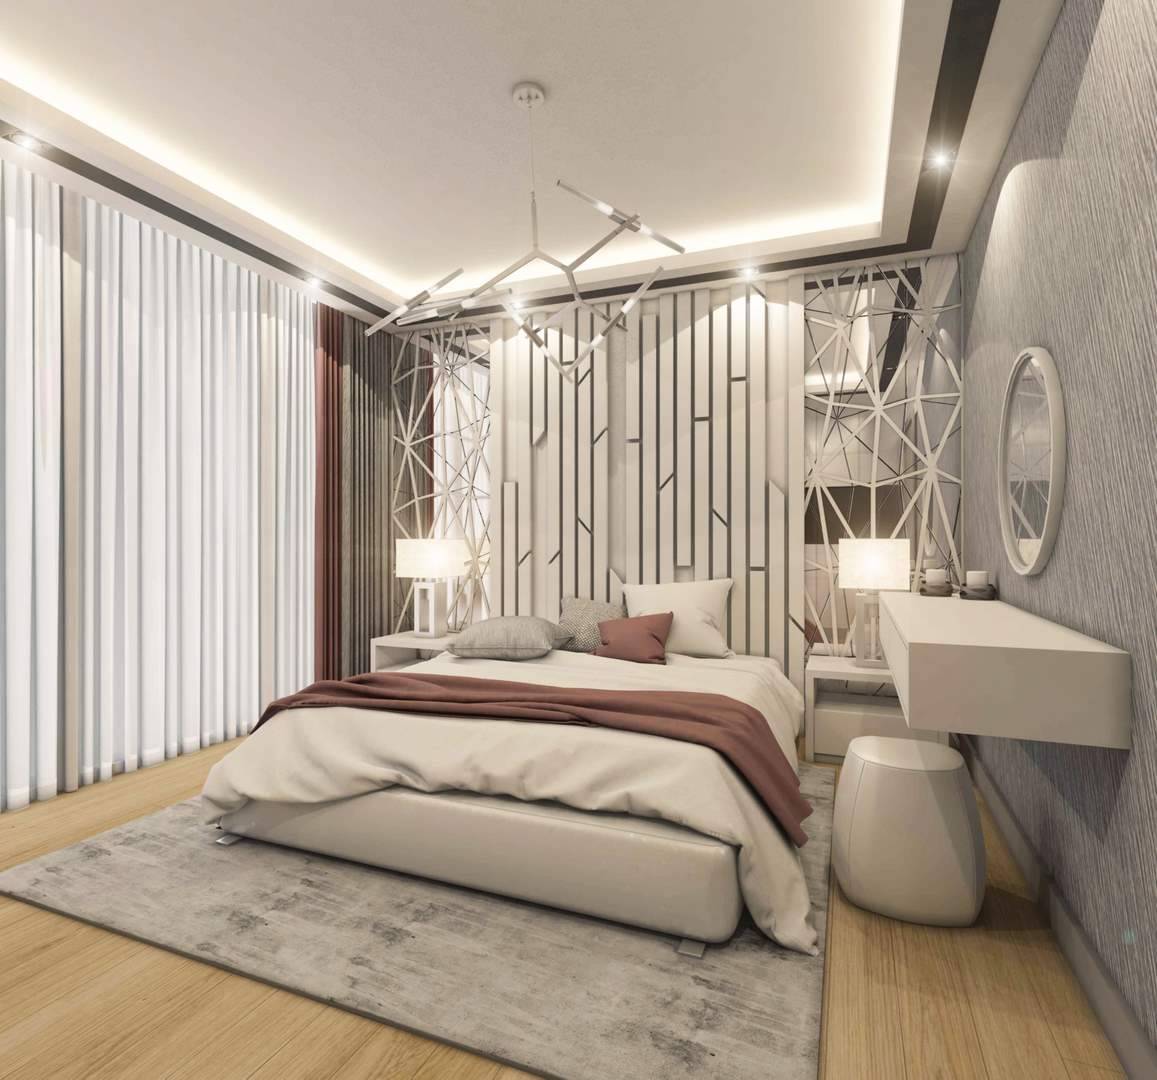 Kartal Marina Residence yatak odası tasarımı